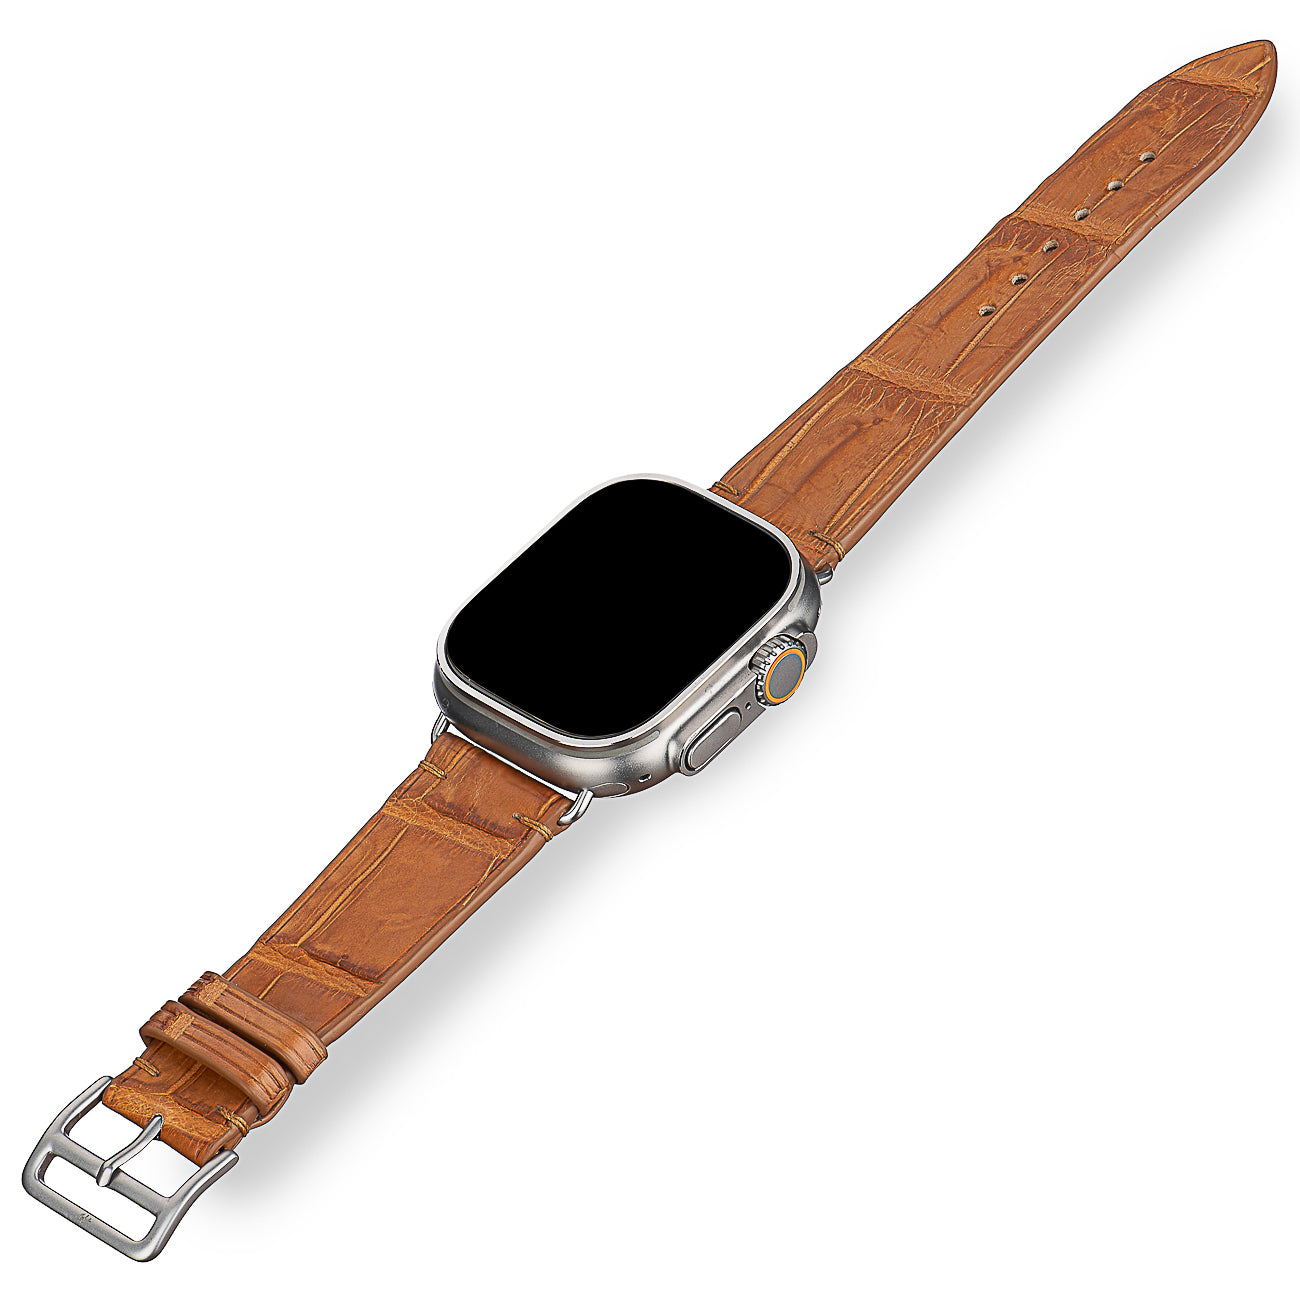 Apple Watch Band - Alligator  "AUTUMN ORANGE"